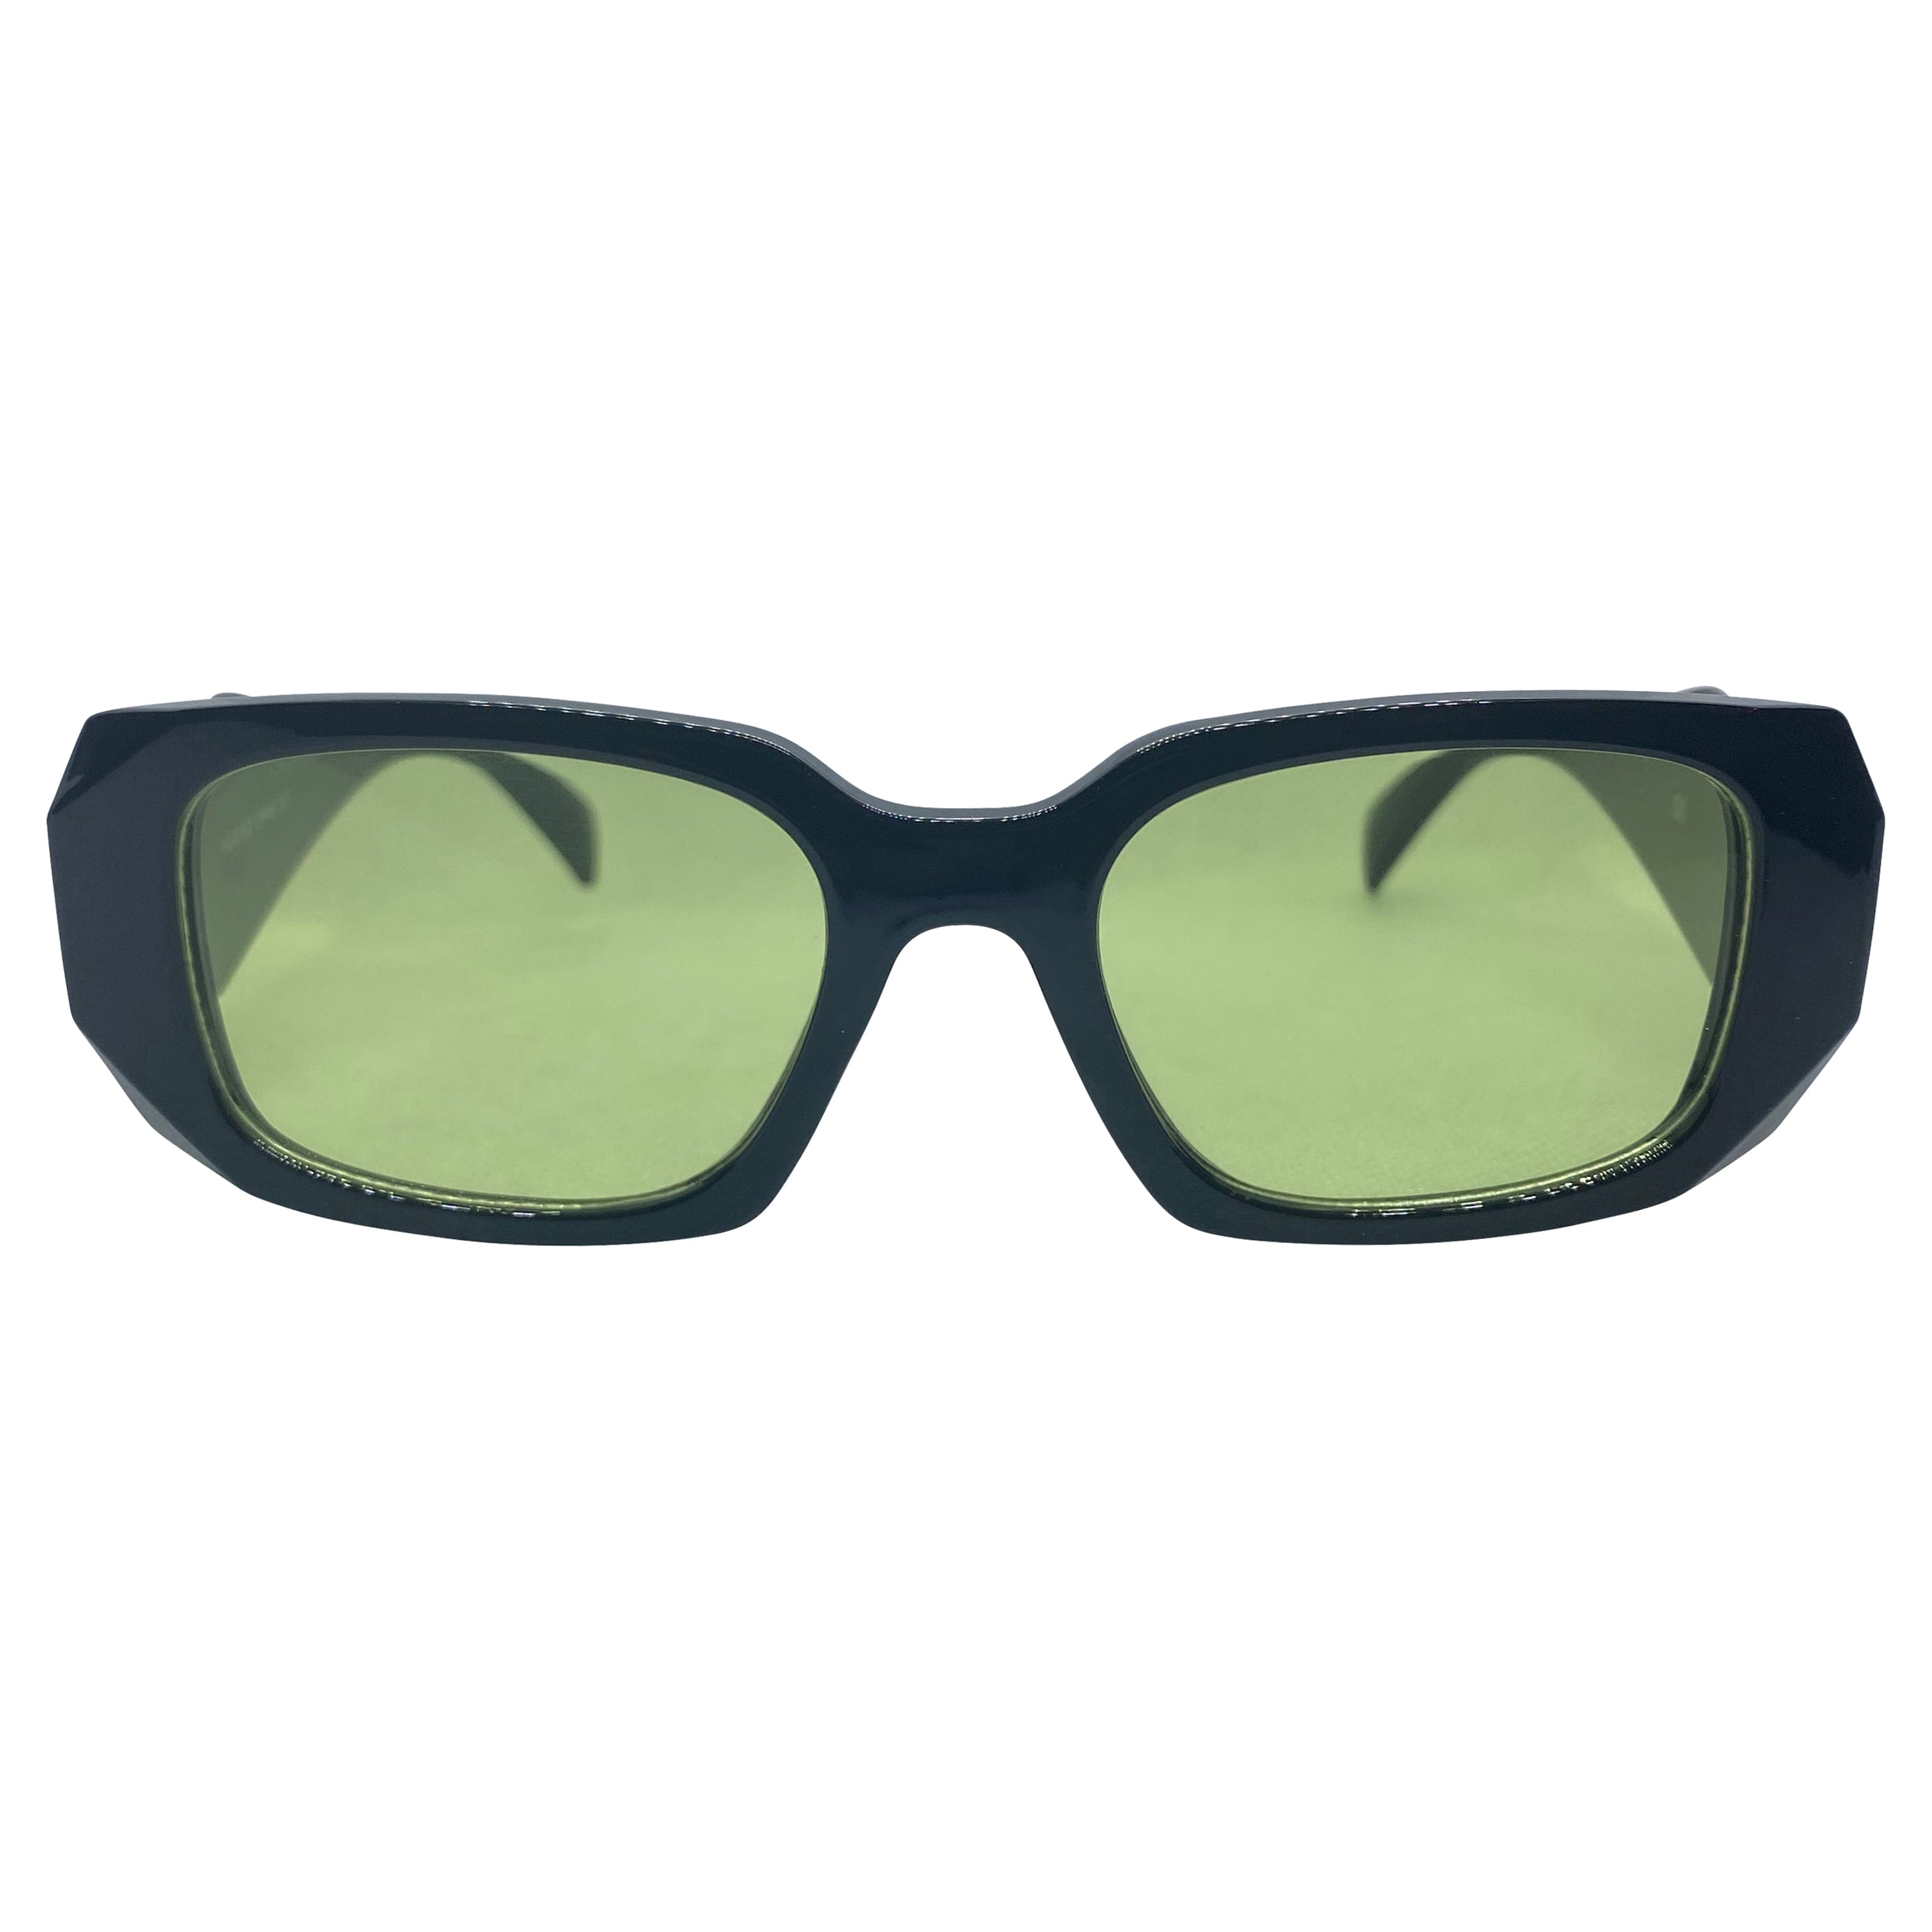 KNIGHT Black/Green Square Sunglasses